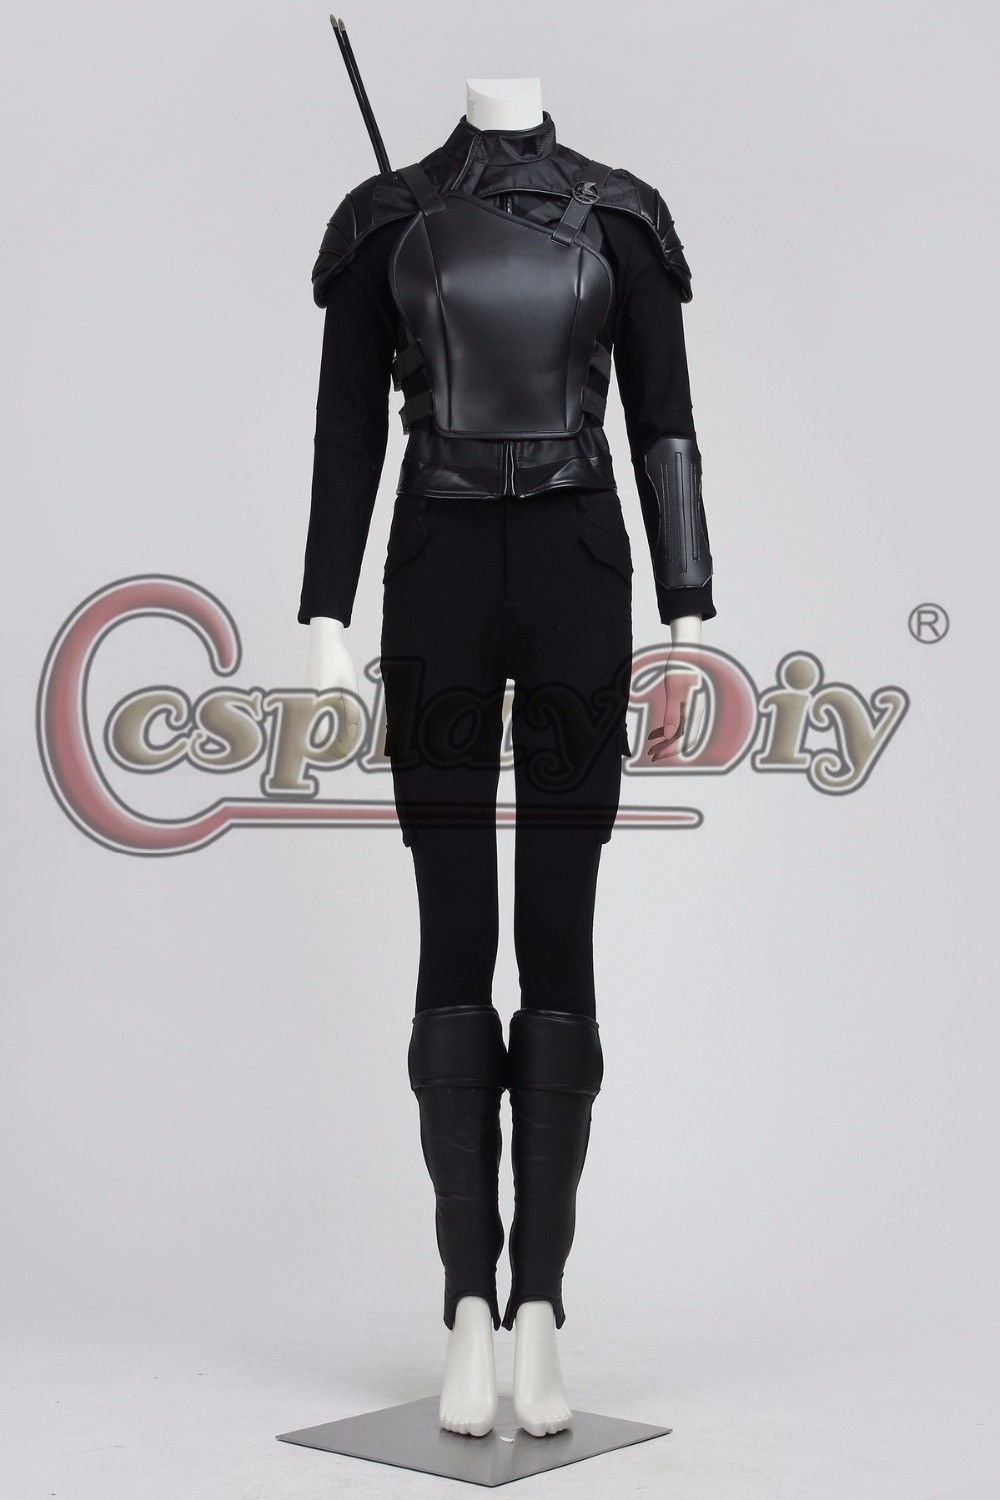 DIY Katniss Everdeen Costume
 Cosplaydiy Custom Made The Hunger Games Katniss Everdeen